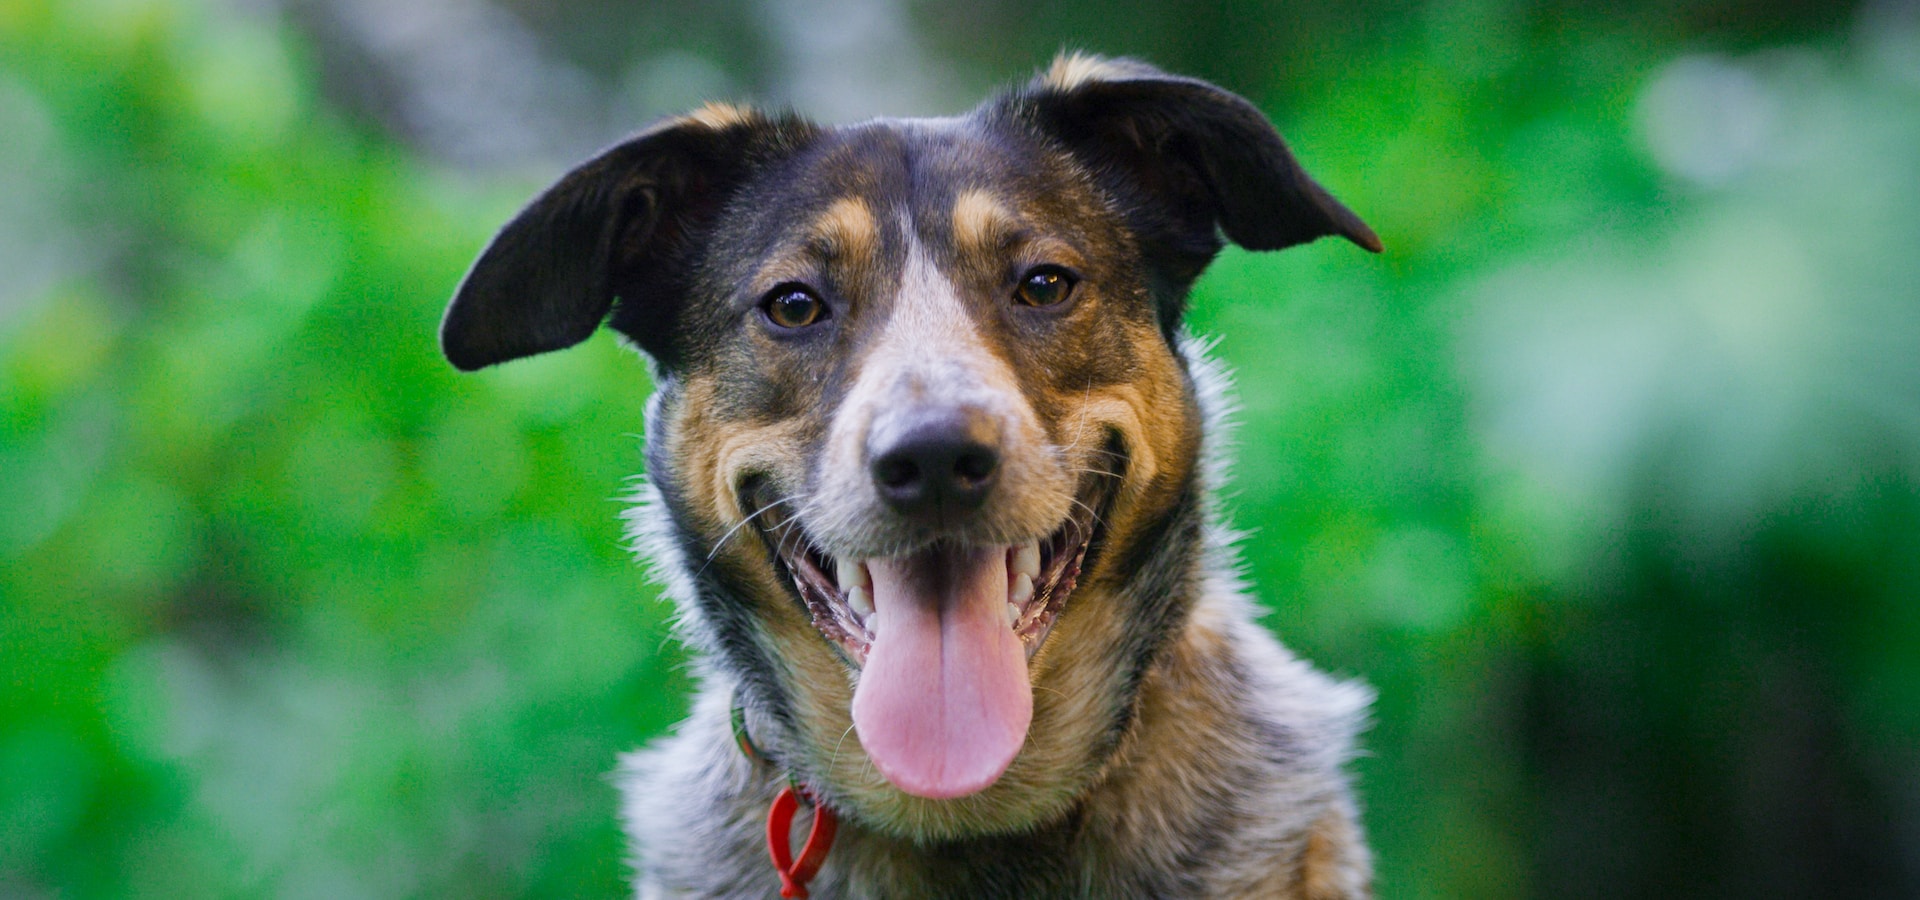 Além de um ótimo cão pastor, o Kelpie é amado em todo o mundo como um animal de companhia. Foto: Fluid Imagery/Unsplash